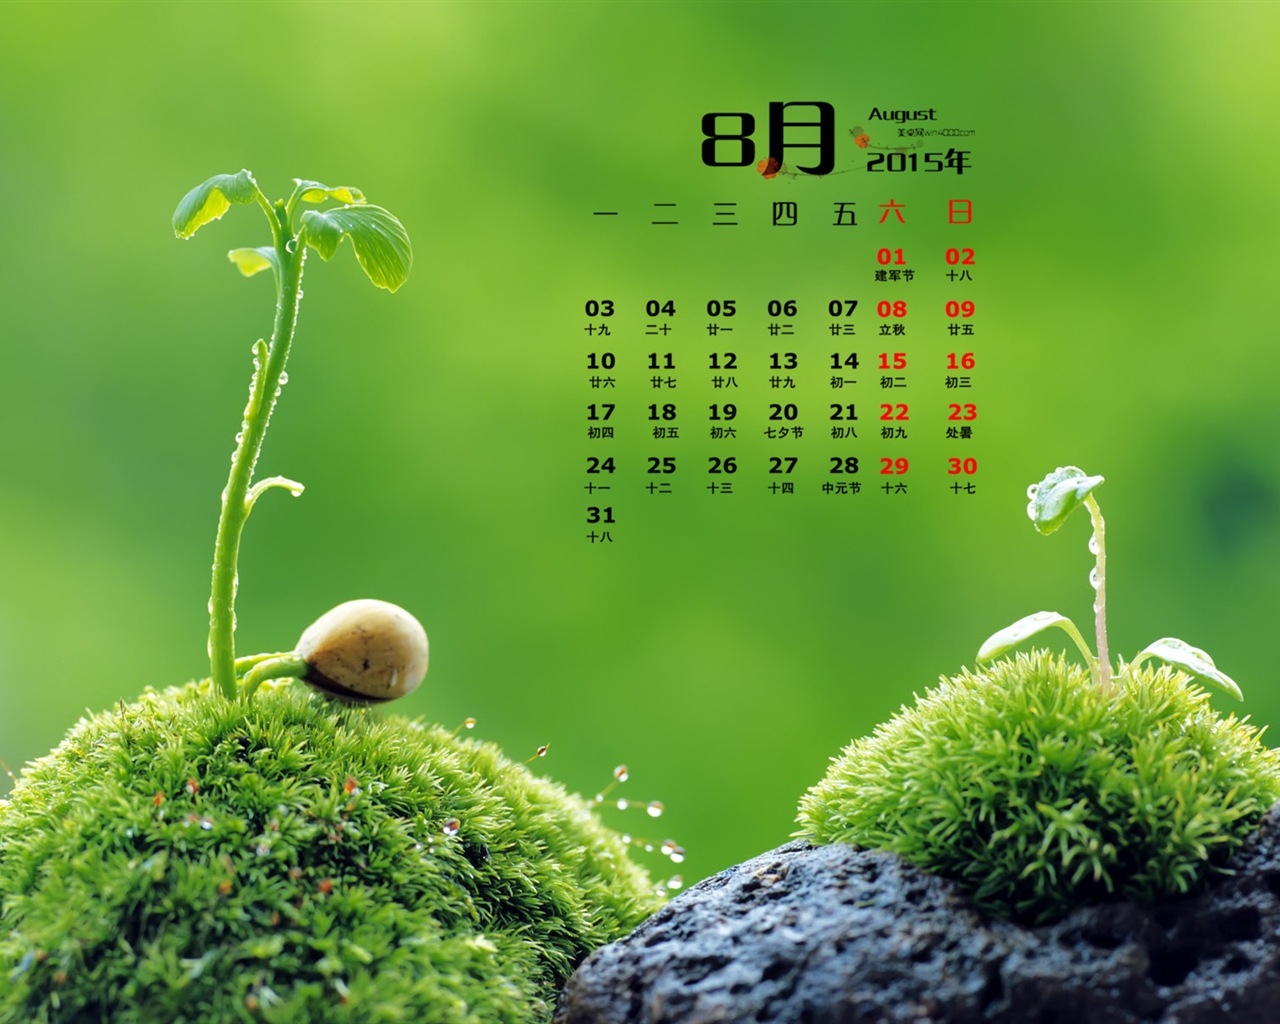 August 2015 Kalender Wallpaper (1) #16 - 1280x1024